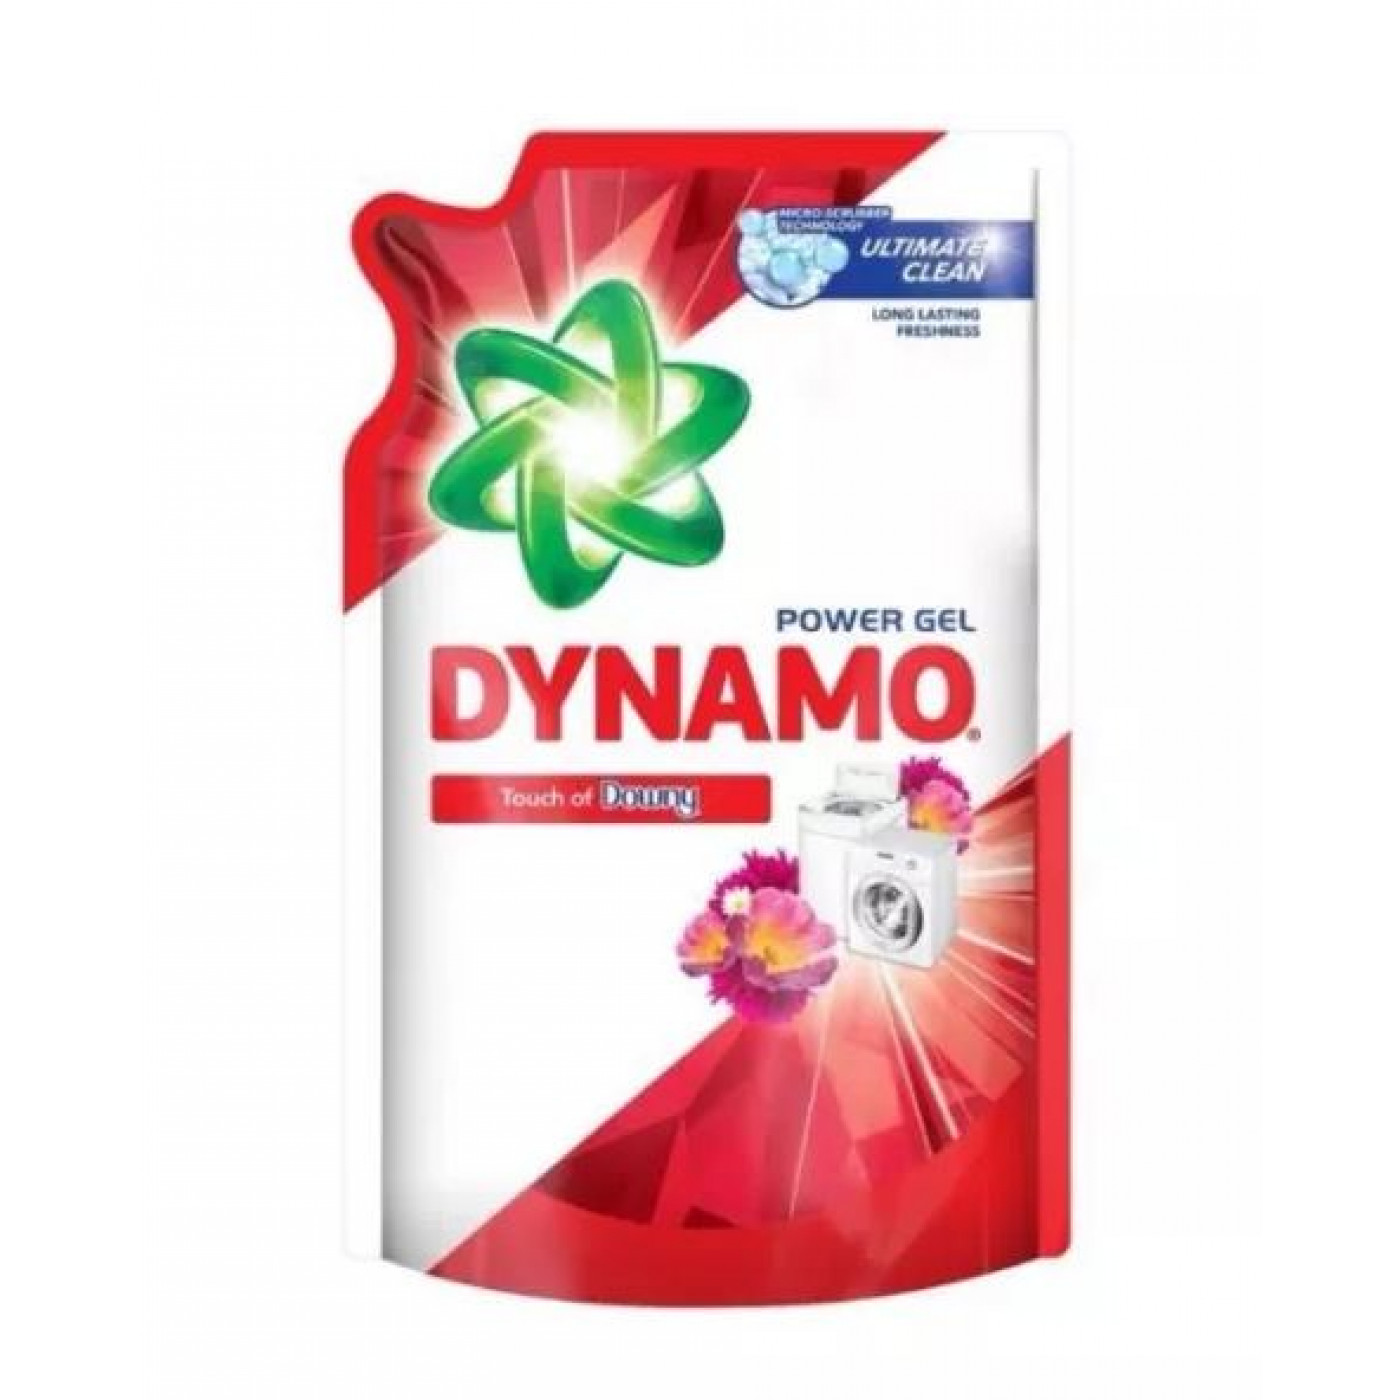 DYNAMO R 1.44L DOWNY